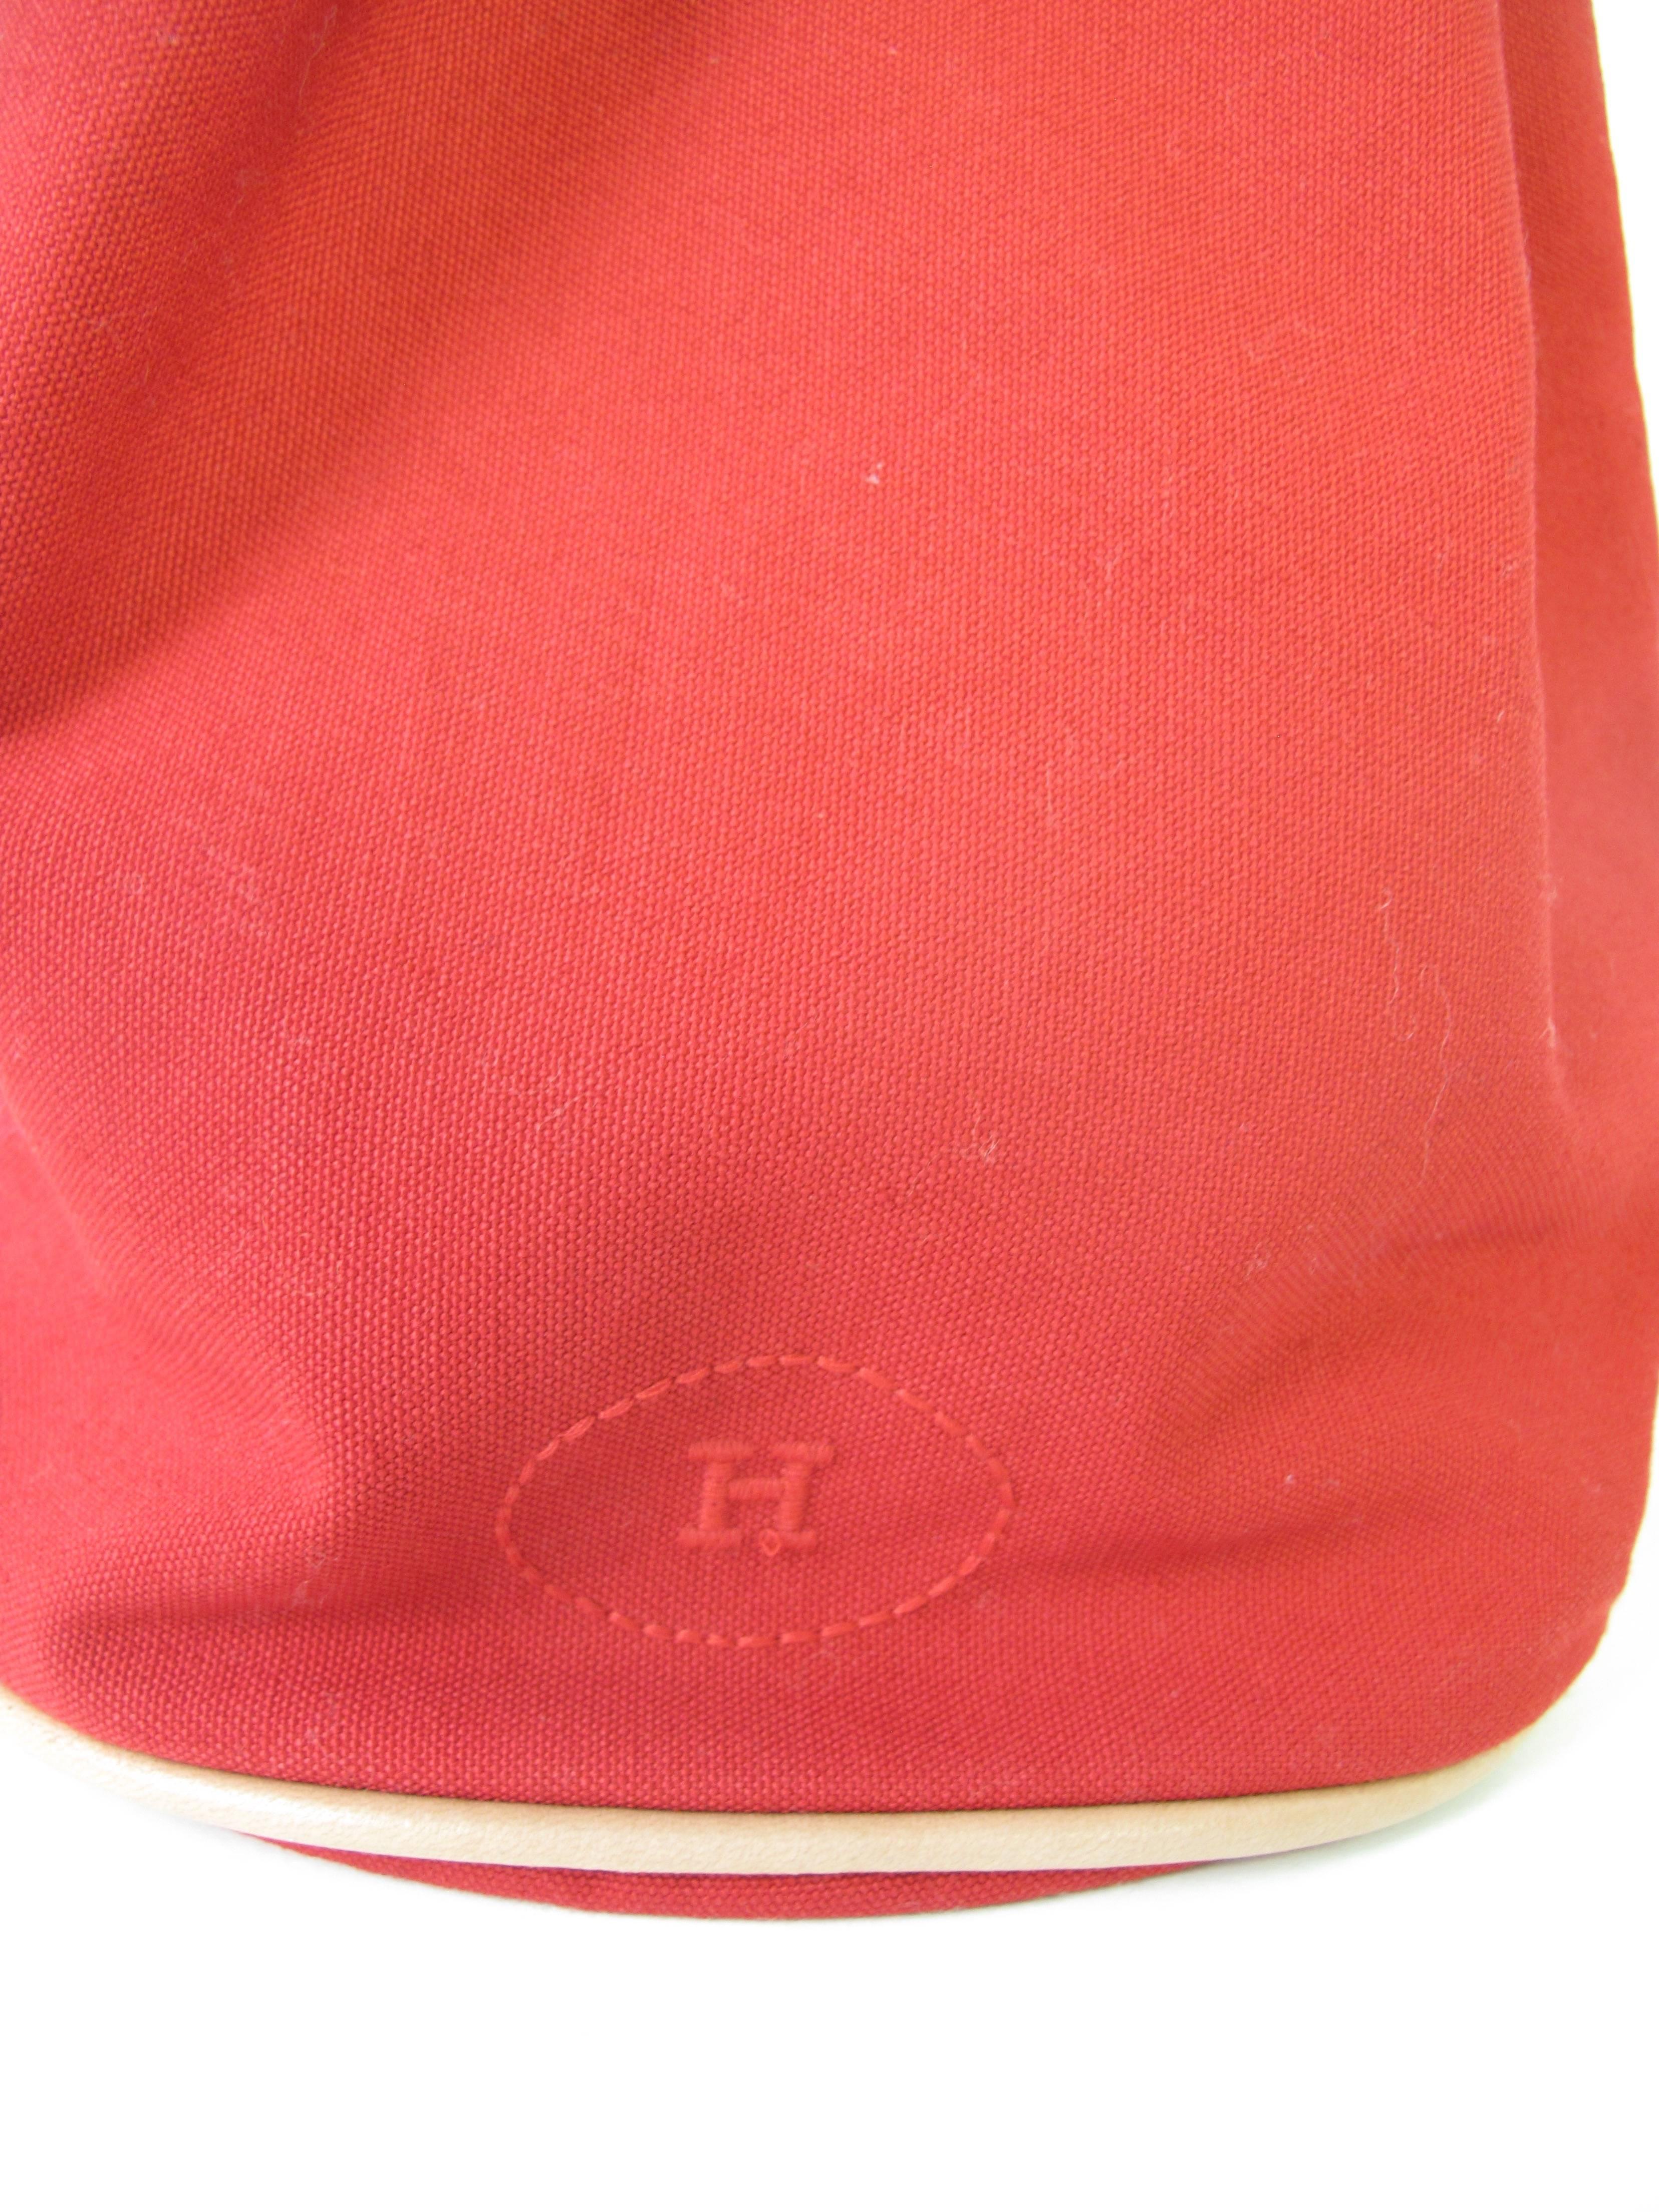 Red Hermes  Bag